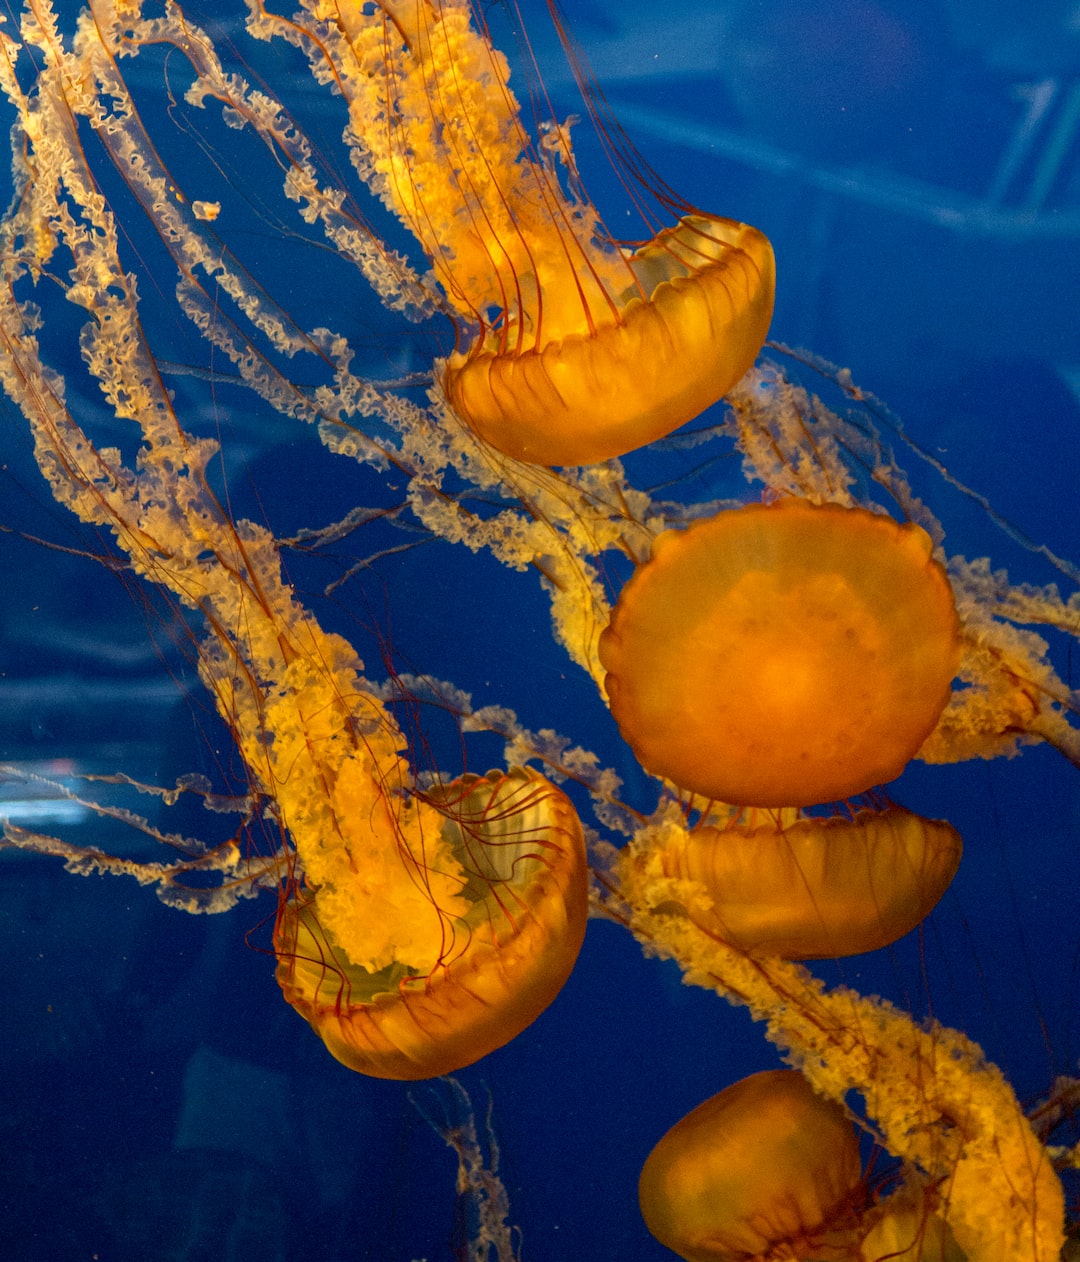 22 wichtige Fragen zu Was Fressen Krebse Im Aquarium